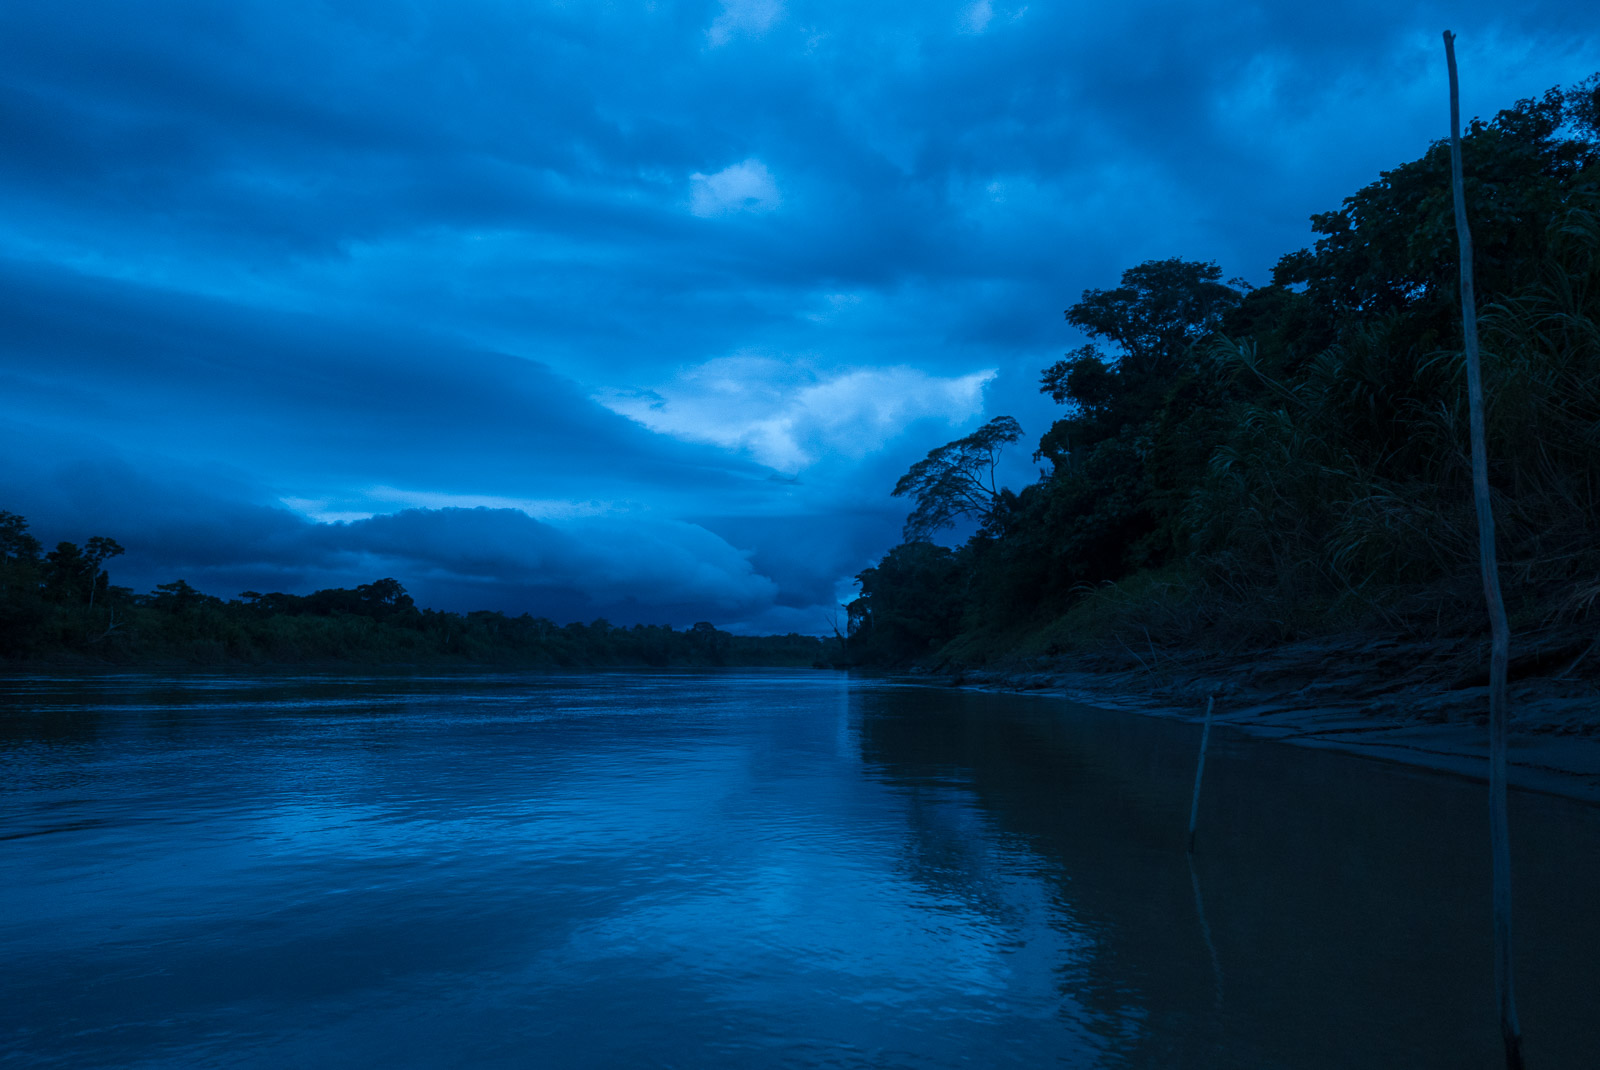 The Tambopata River in the Amazon Jungle, Peru